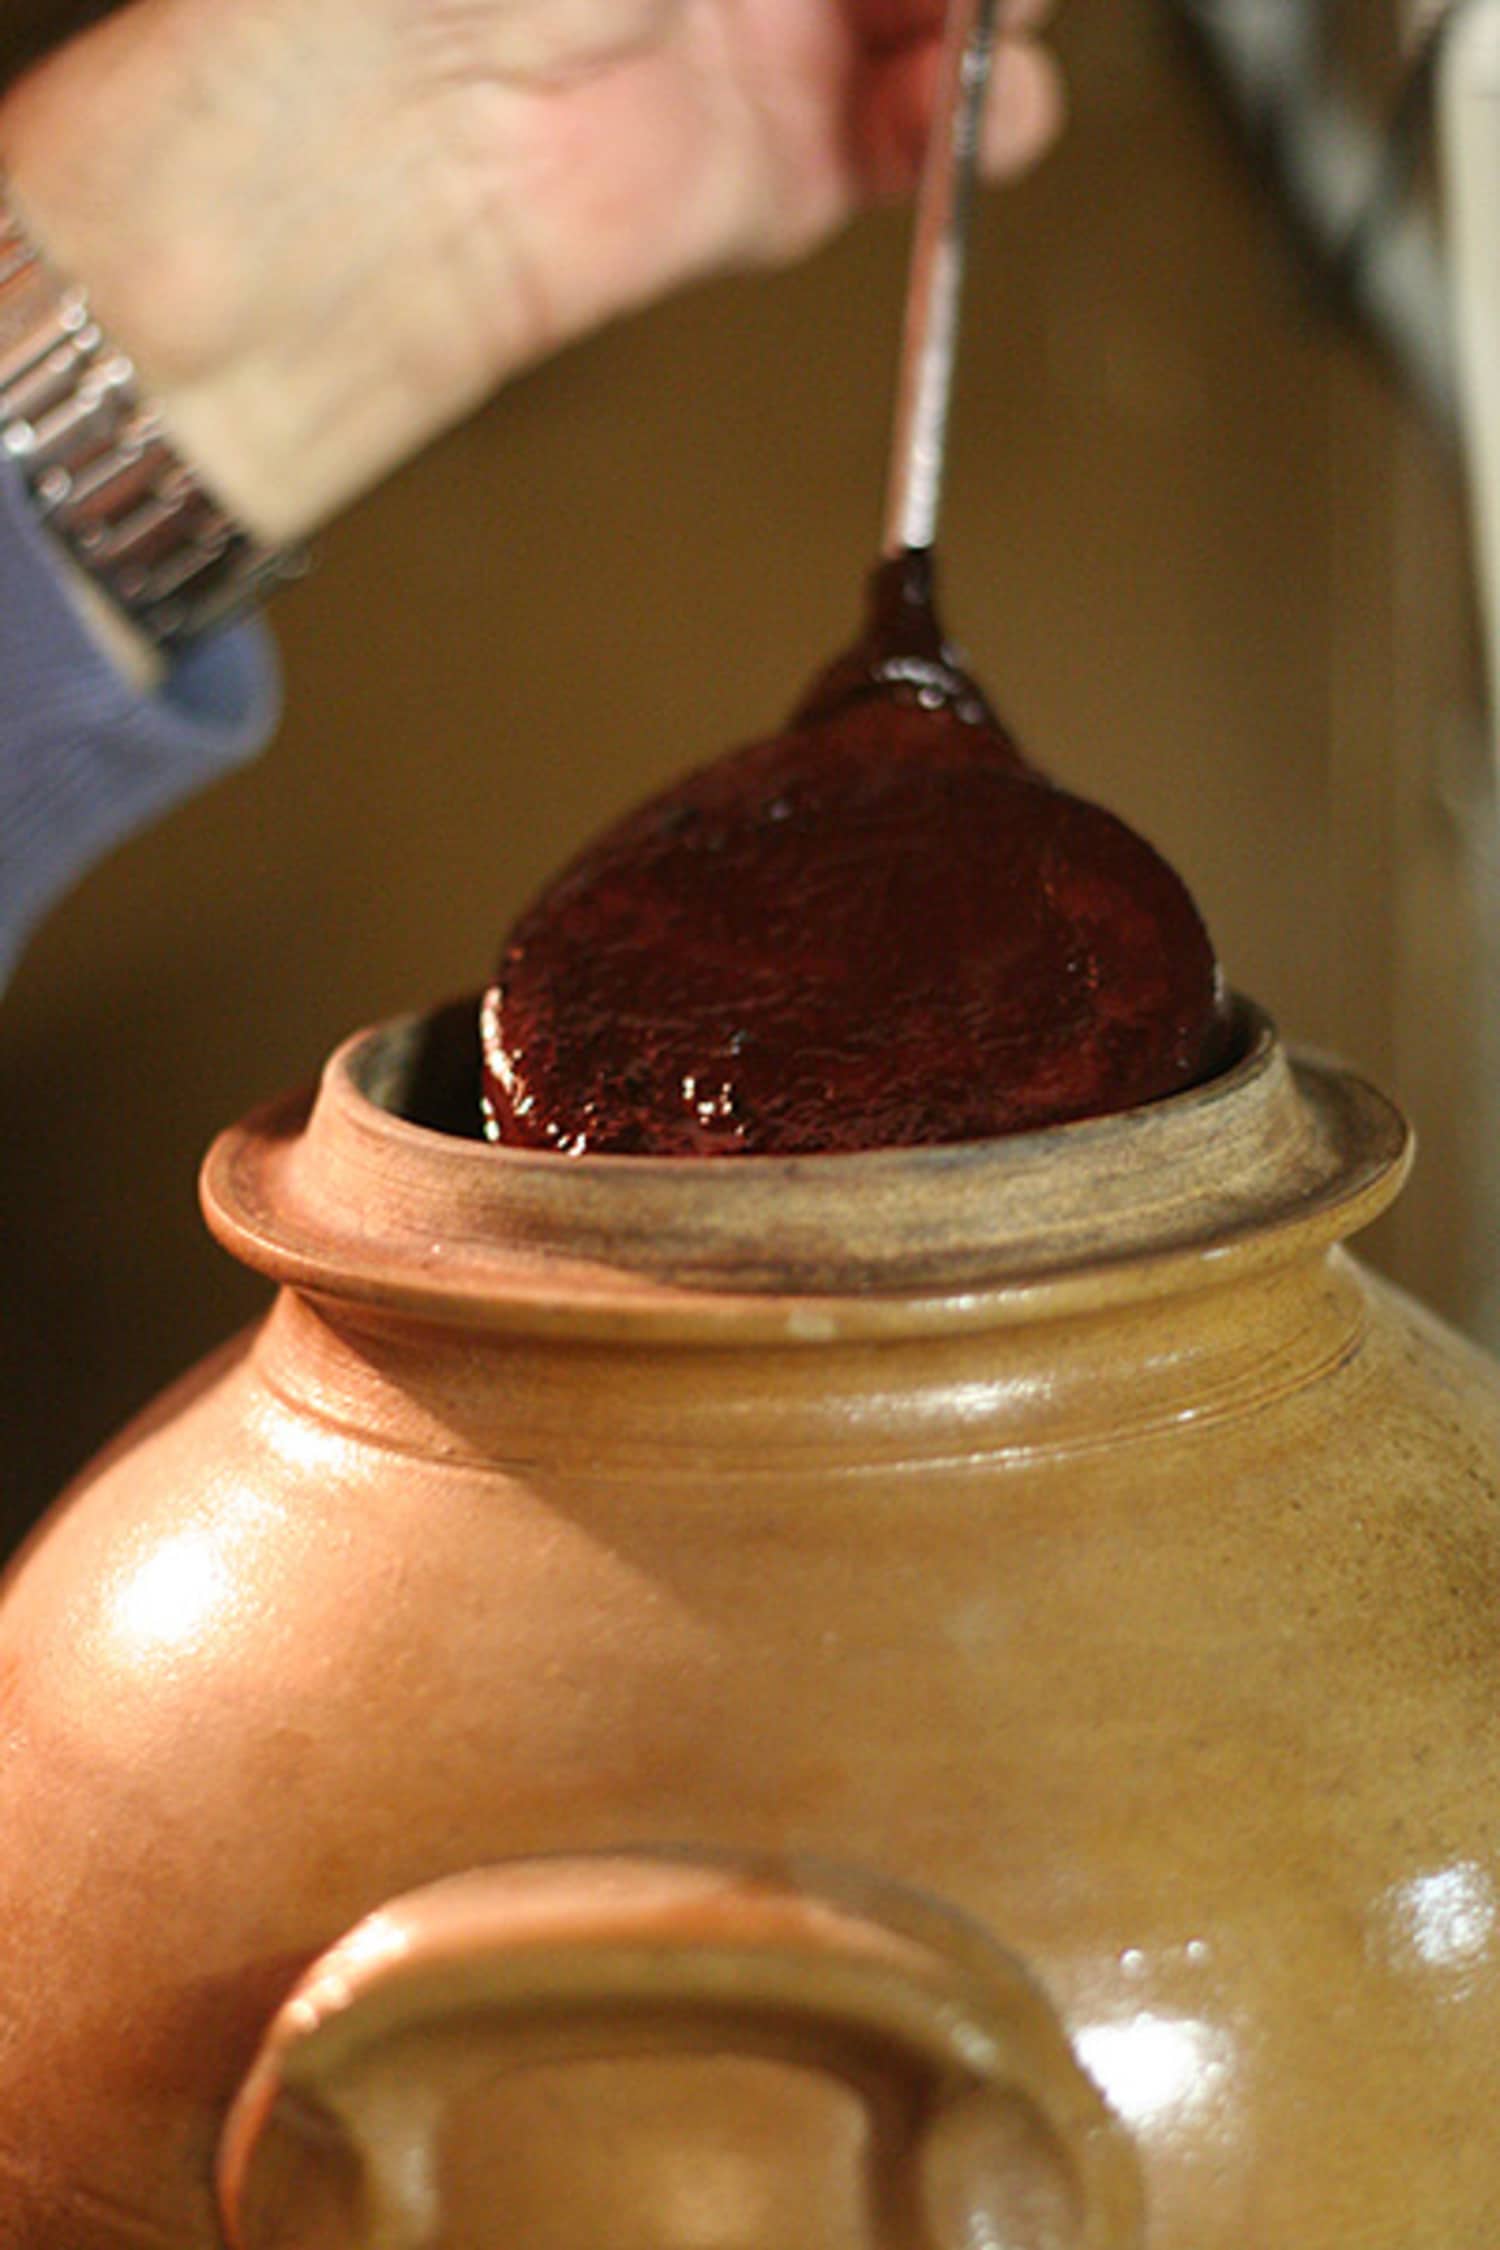 How to Make Homemade Vinegar - SHTF & Prepping Central